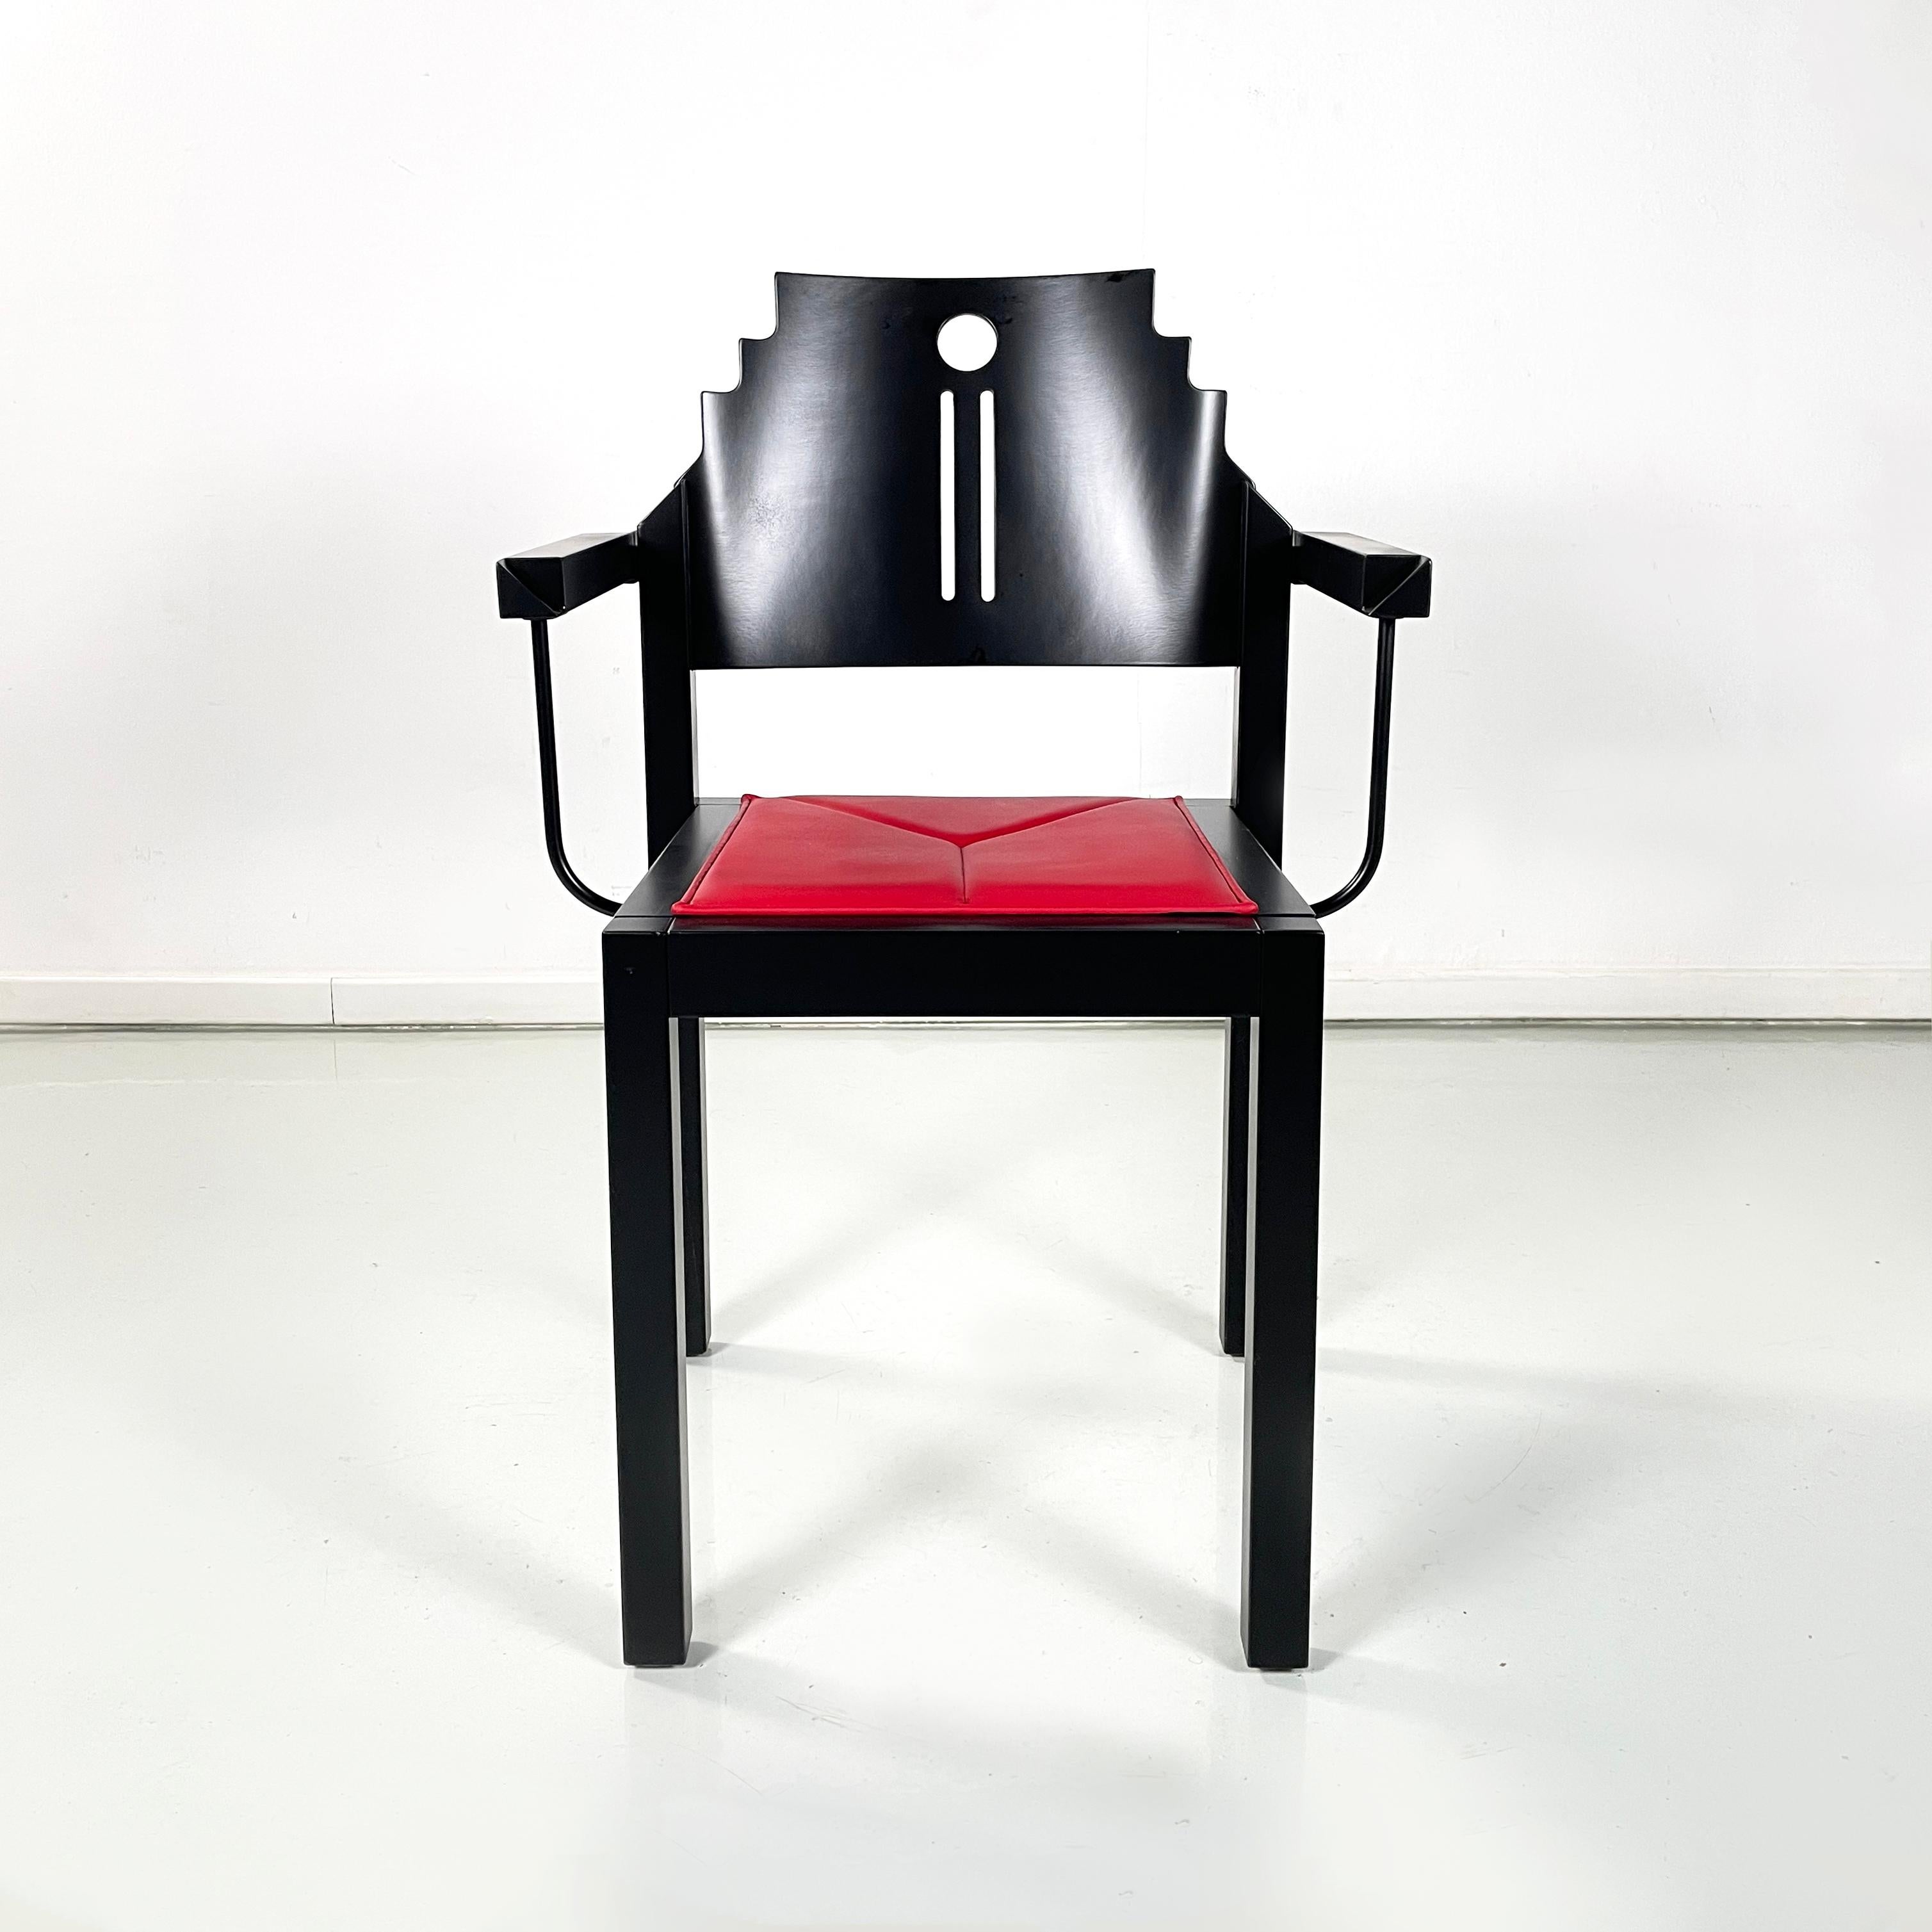 Chaise moderne autrichienne en bois noir et cuir rouge par Thonet, années 1990
Chaise avec assise carrée recouverte de cuir rouge vif et structure en bois laqué noir, finition mate. Le dossier façonné et incurvé présente des trous décoratifs ronds